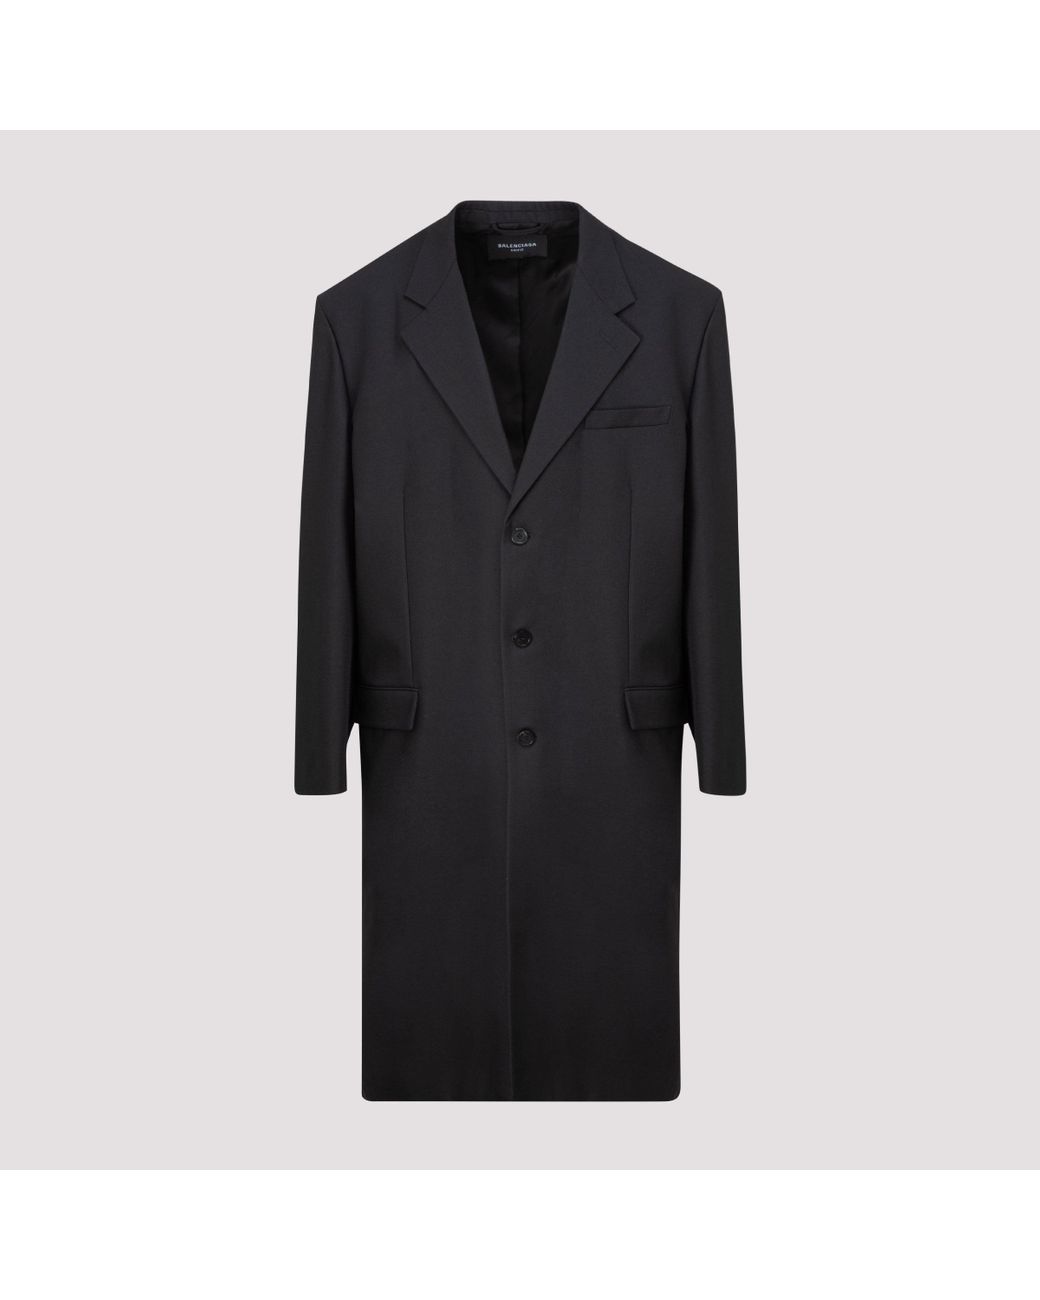 Balenciaga Wool Hybrid Blazer Coat in Black for Men - Lyst